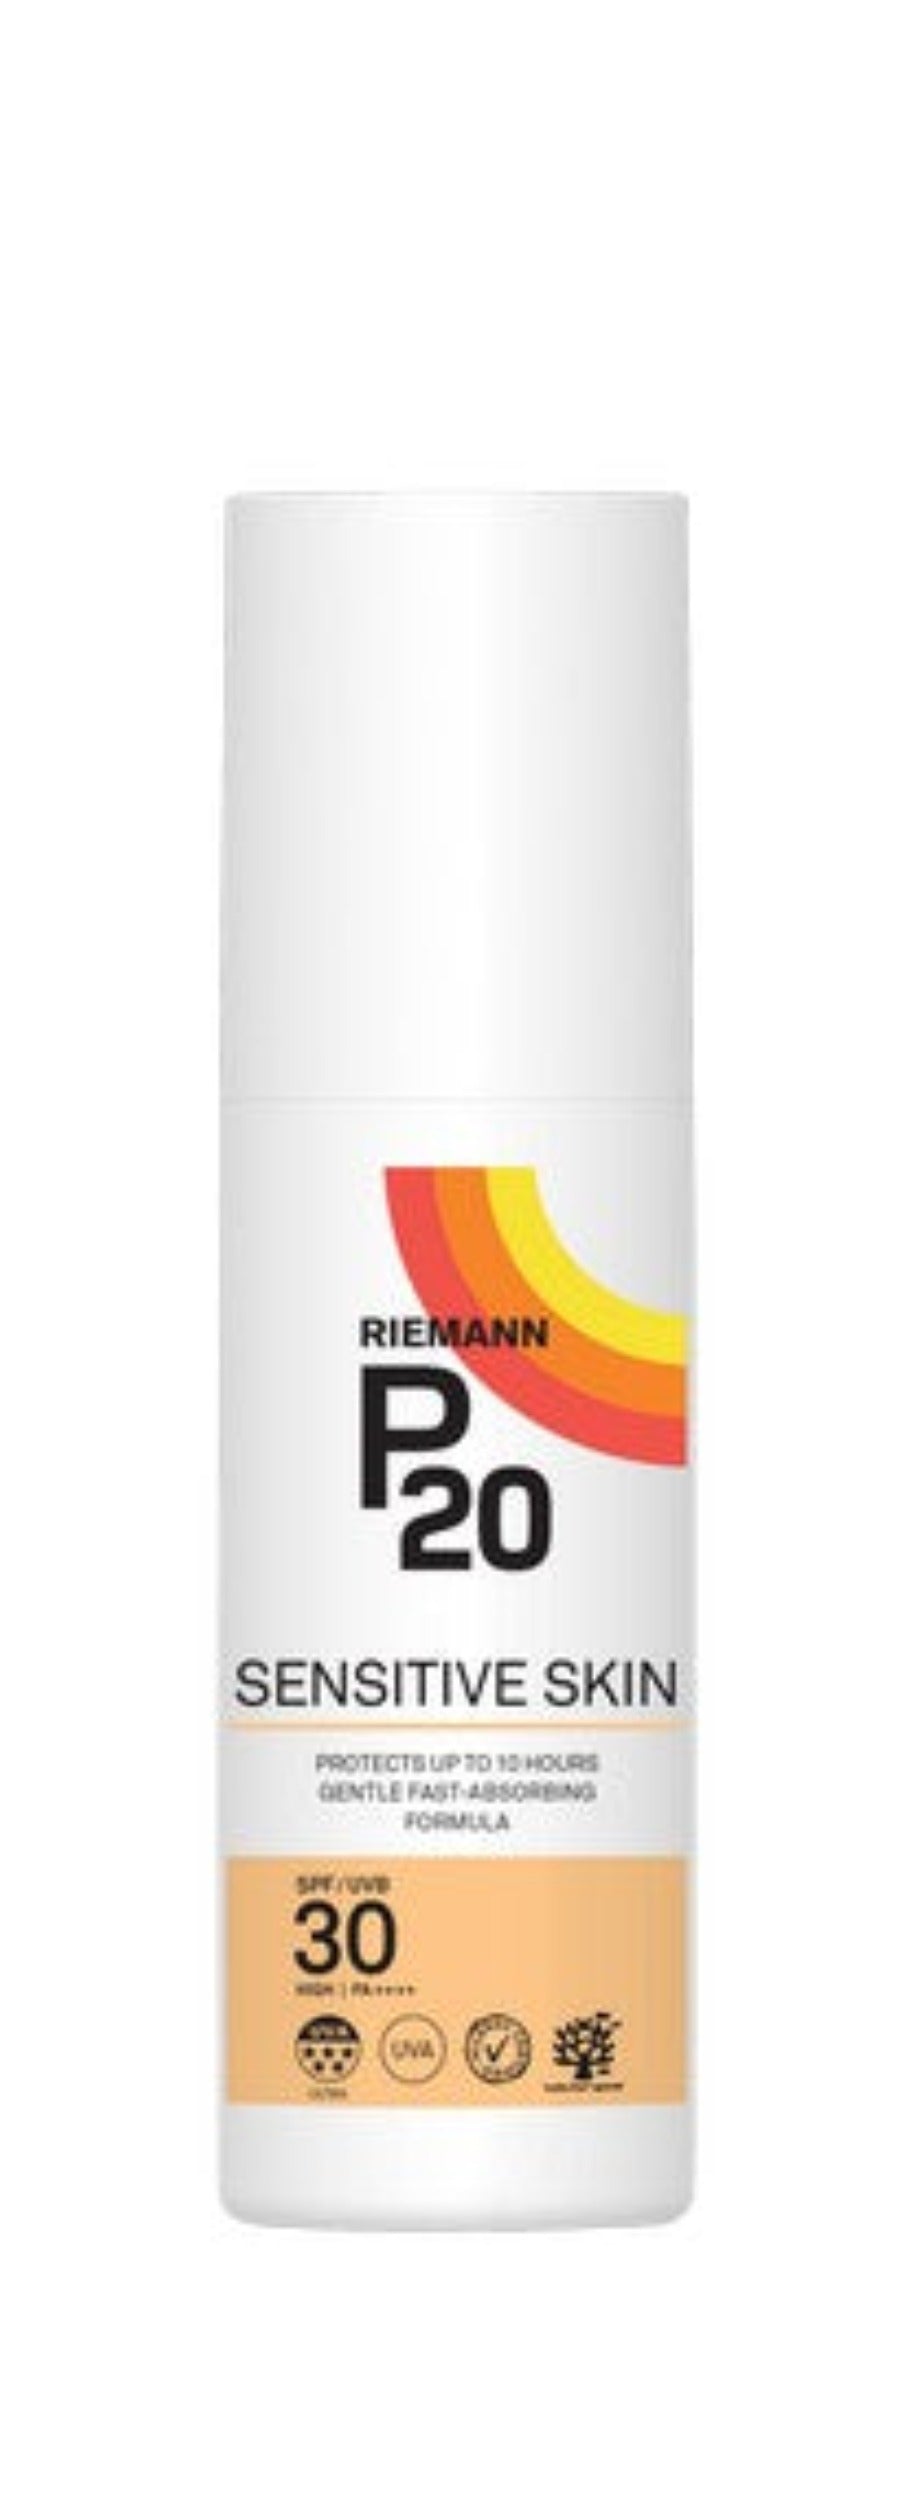 P20 Sensitive Skin Cream SPF30 100ml-bottle